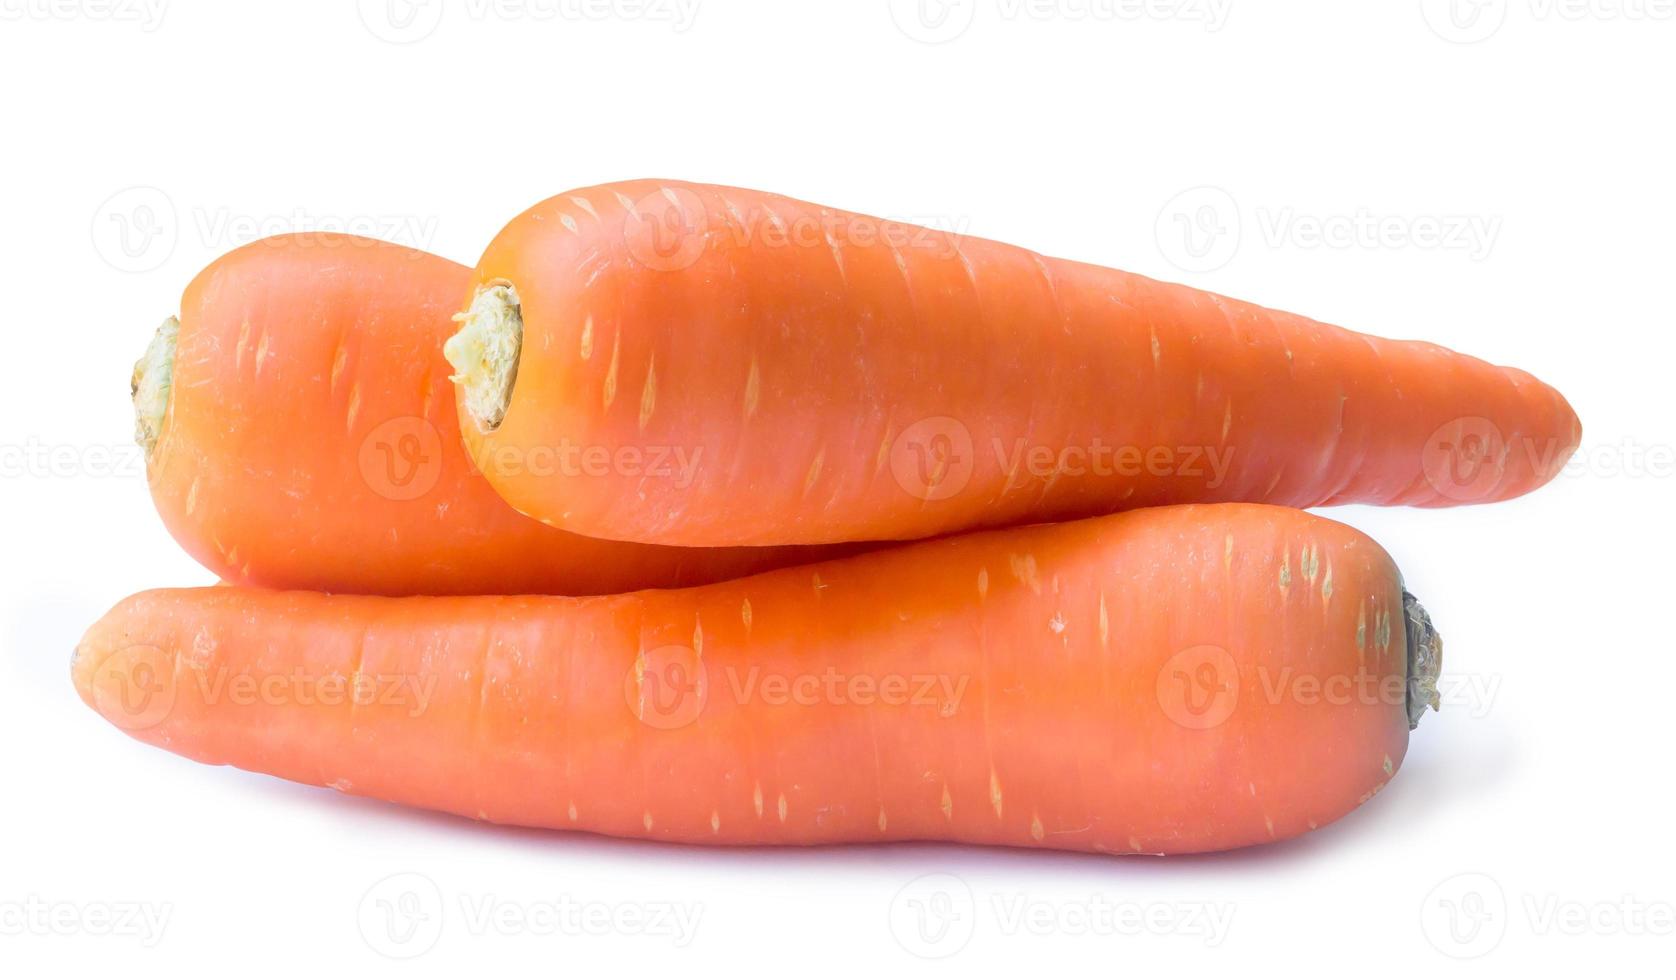 tres zanahorias naranjas frescas aisladas en fondo blanco con camino de recorte, cierre de raíz vegetal saludable con enfoque completo foto